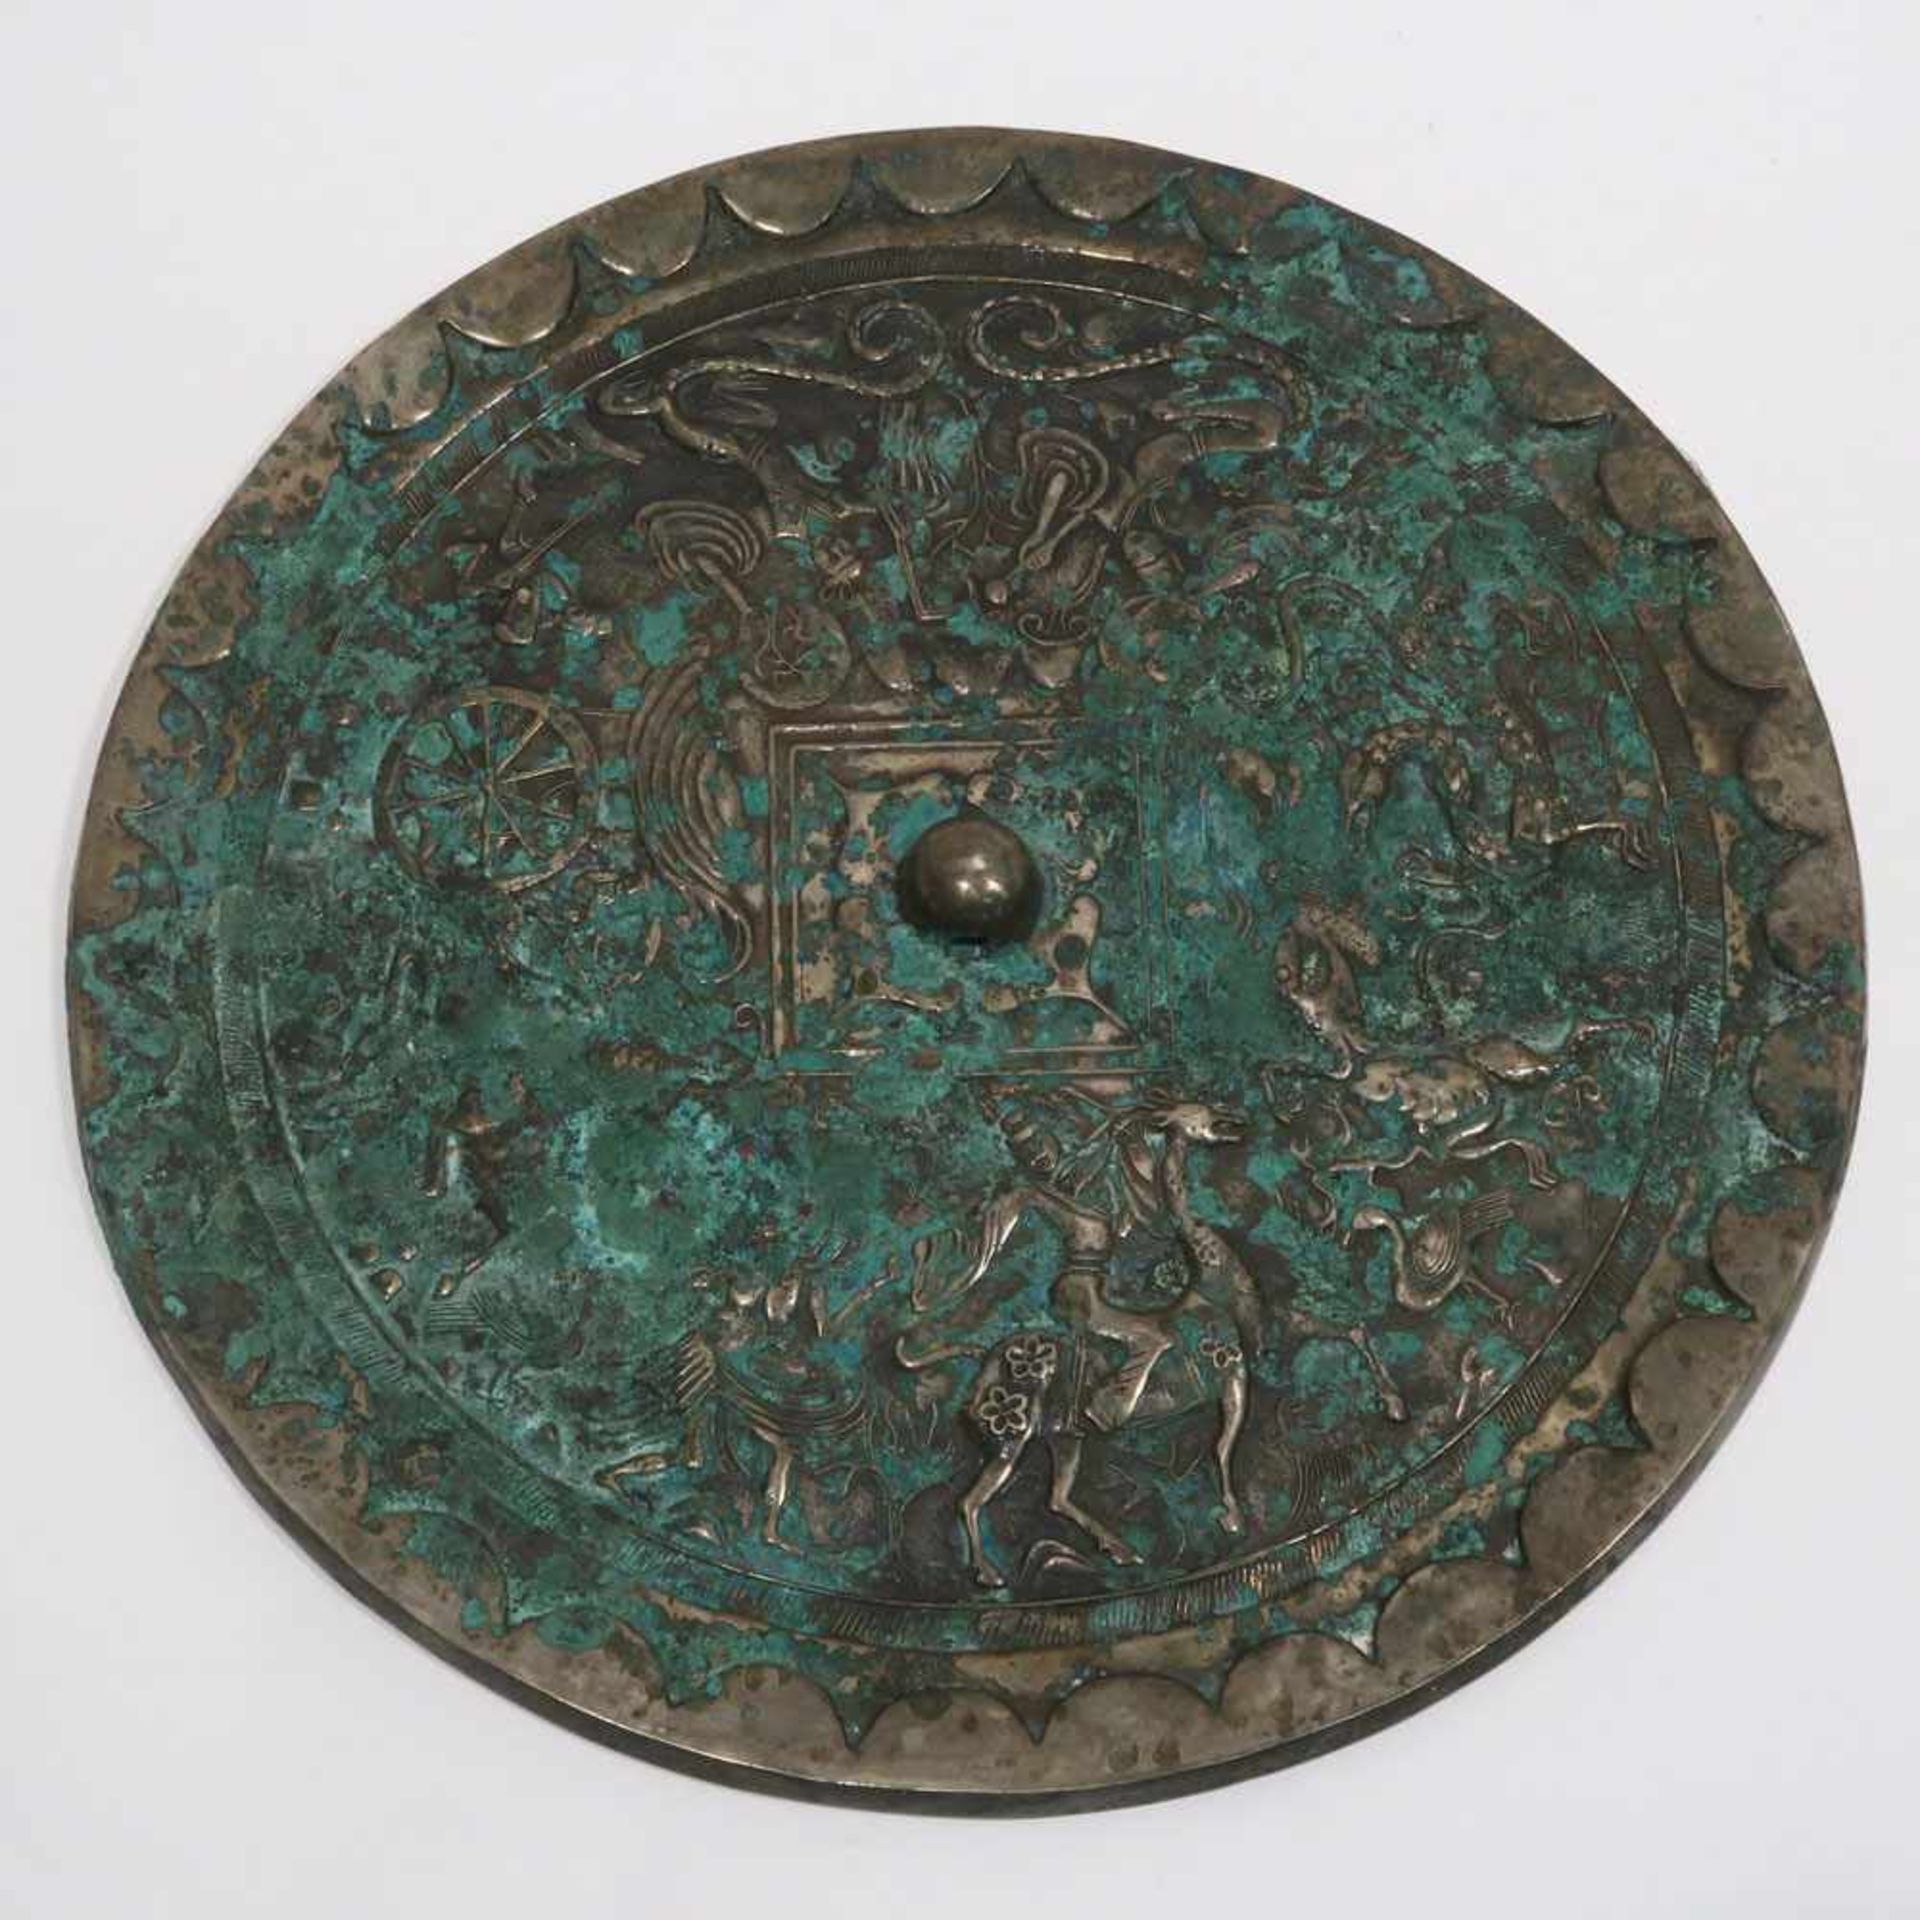 BronzespiegelChina. Bronze. Figürlicher Reliefdekor. Grünspan. Ø 36 cm. - Bild 2 aus 2